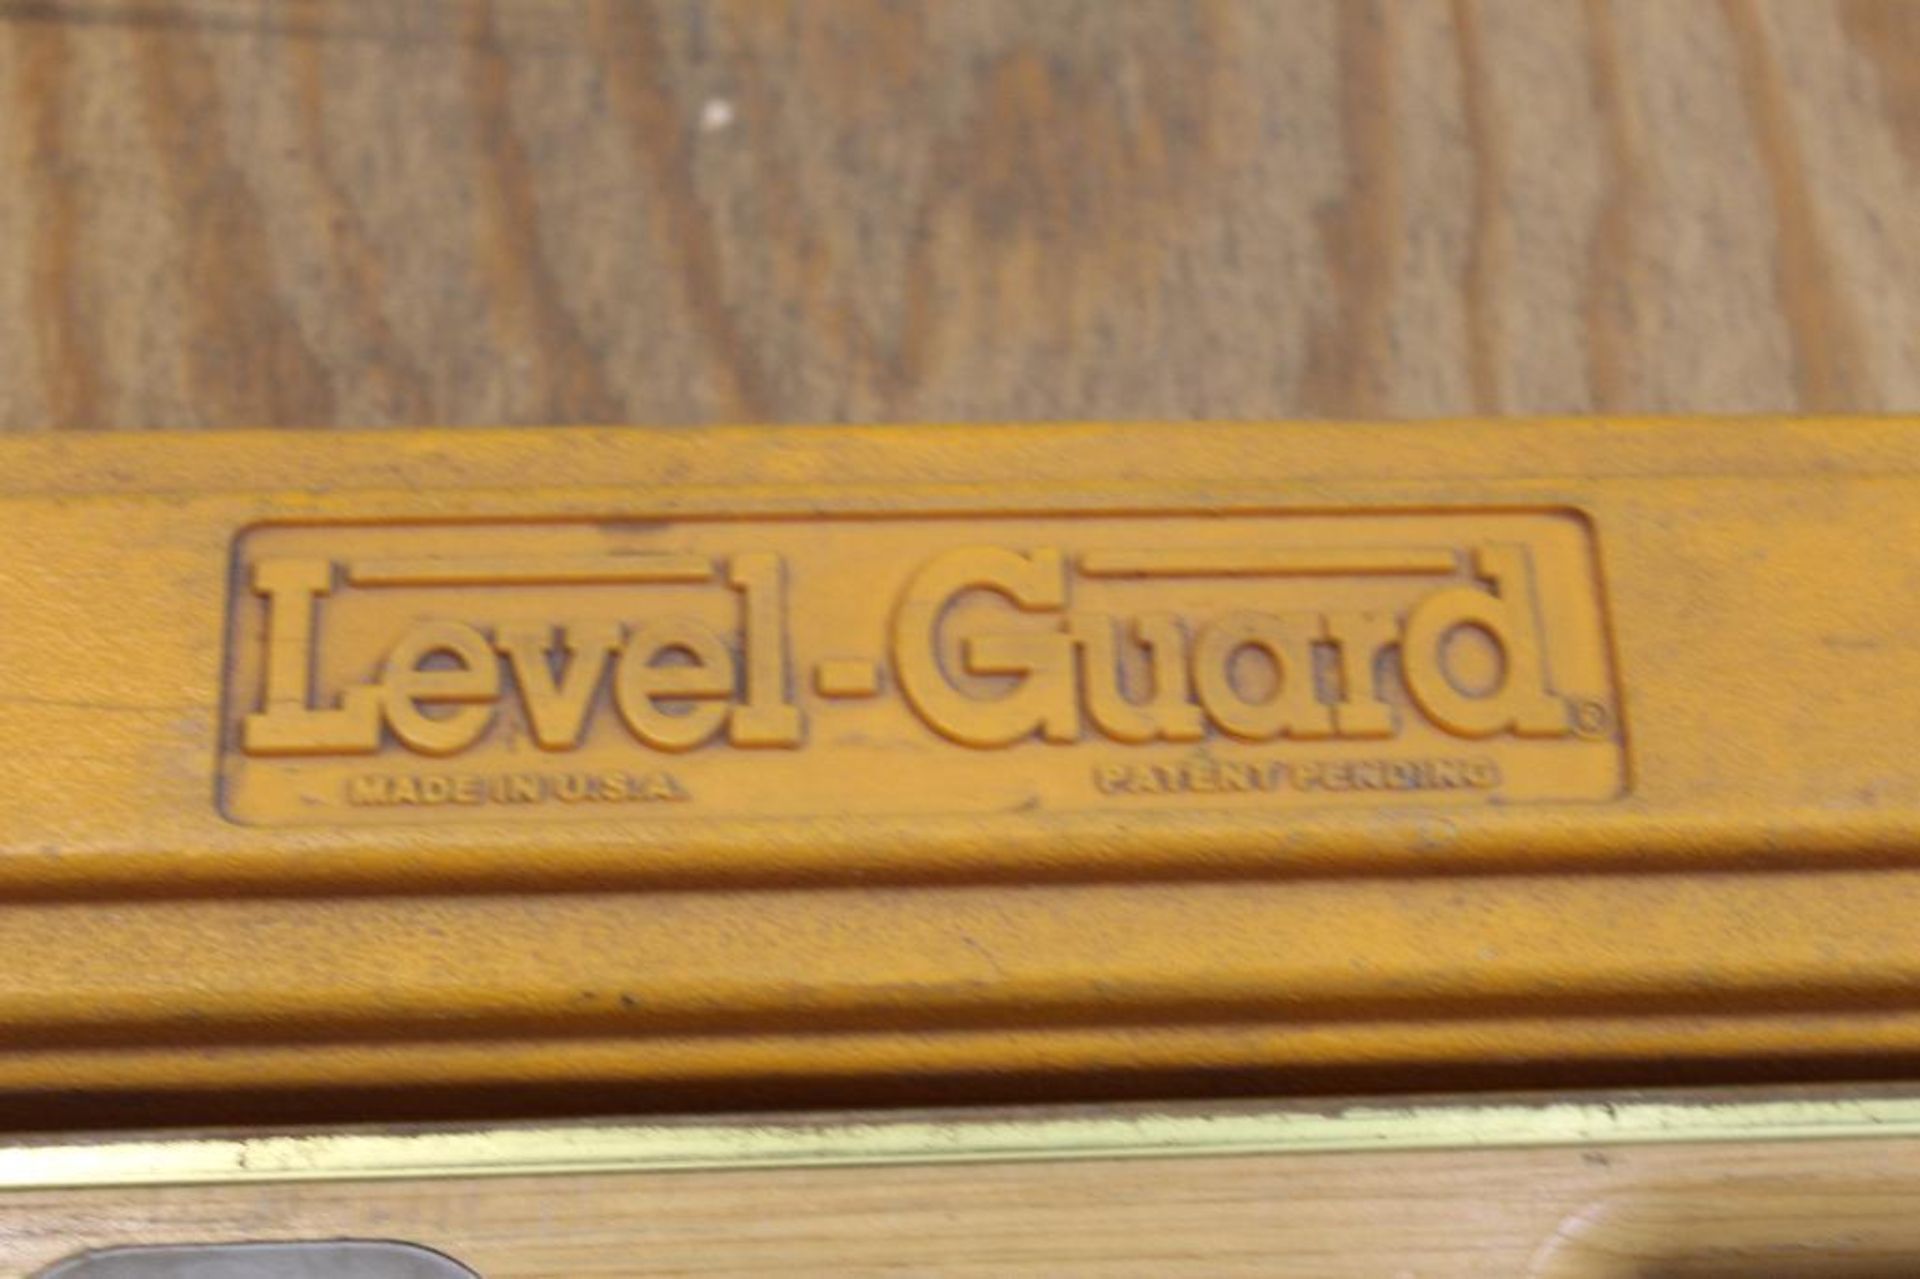 Level Guard Level 4' - Image 3 of 3